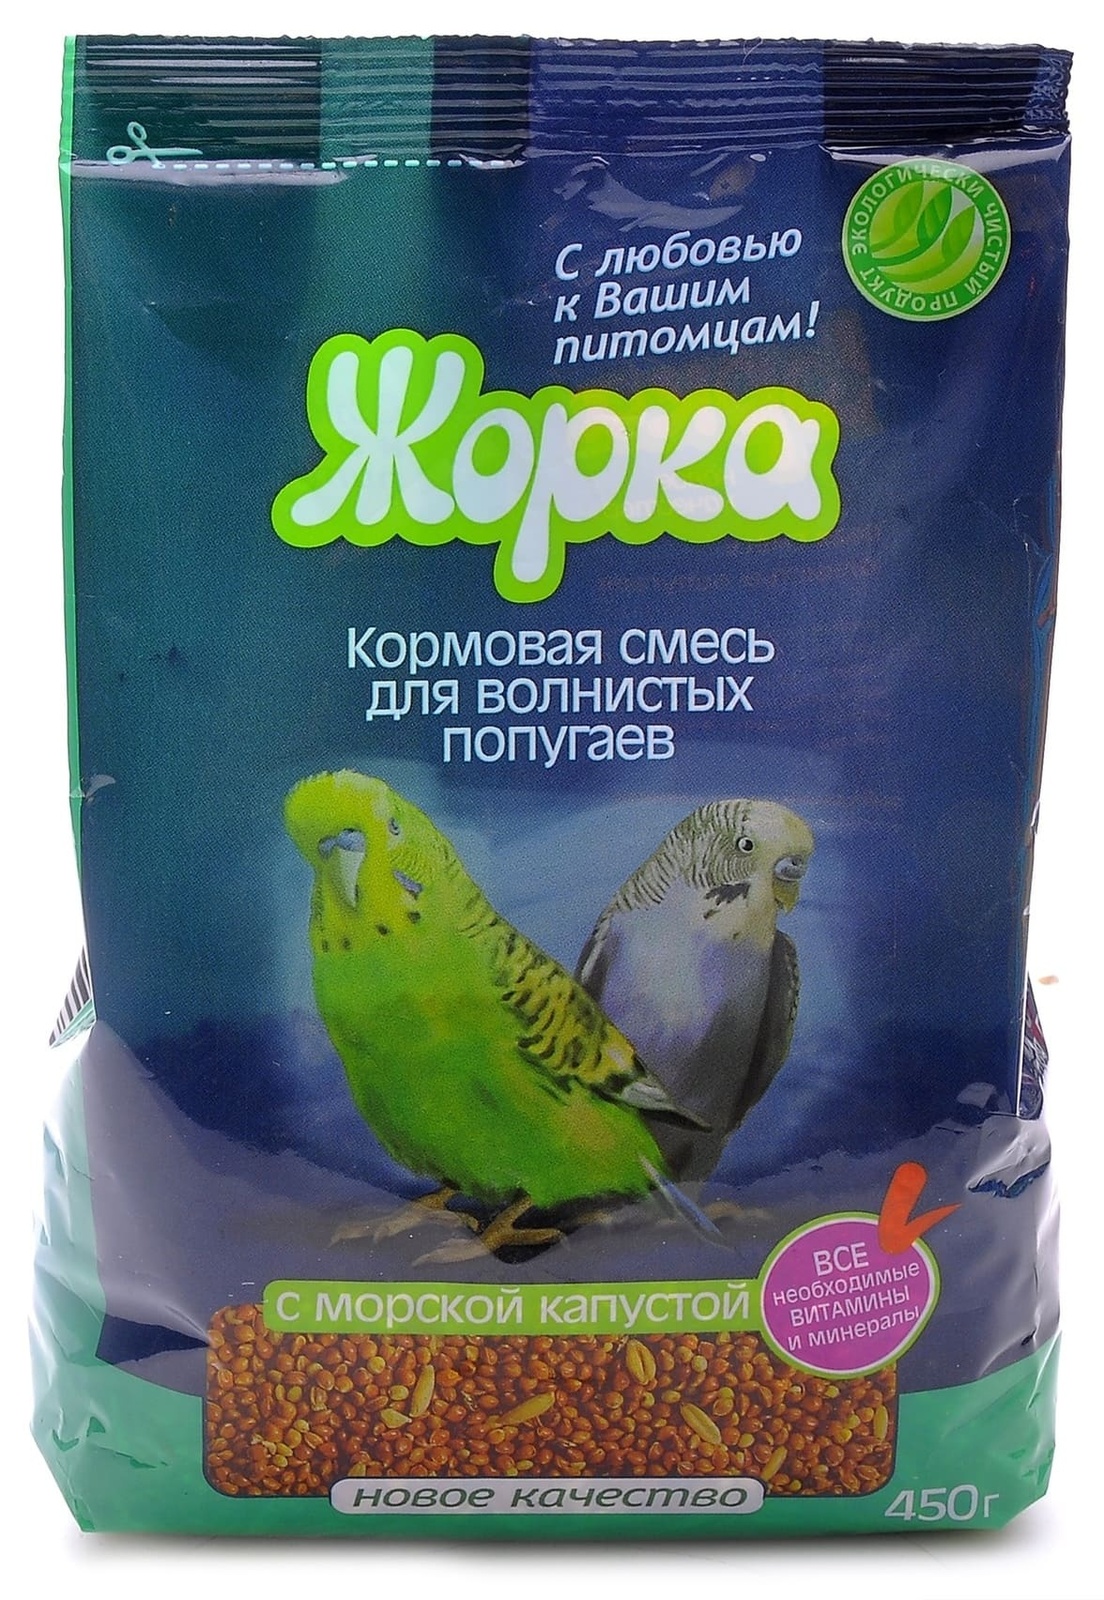 цена Жорка Жорка lux для волнистых попугаев с Морской капустой (пакет) (450 г)